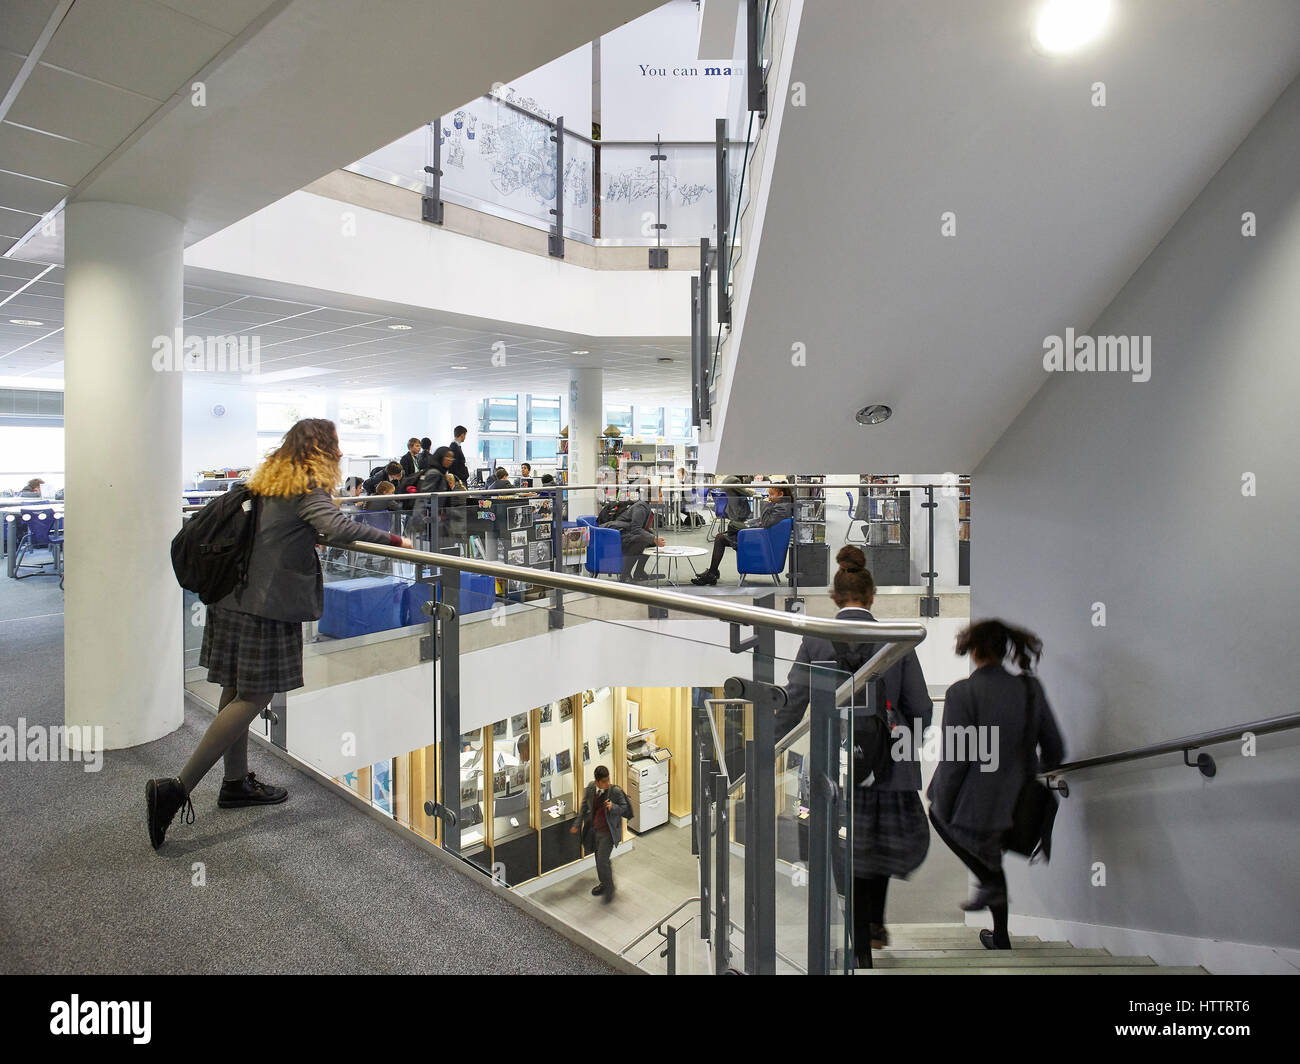 Main Treppe im Einsatz. Kensington Aldridge Academy, London, Vereinigtes Königreich. Architekt: Studio E Architekten, 2016. Stockfoto